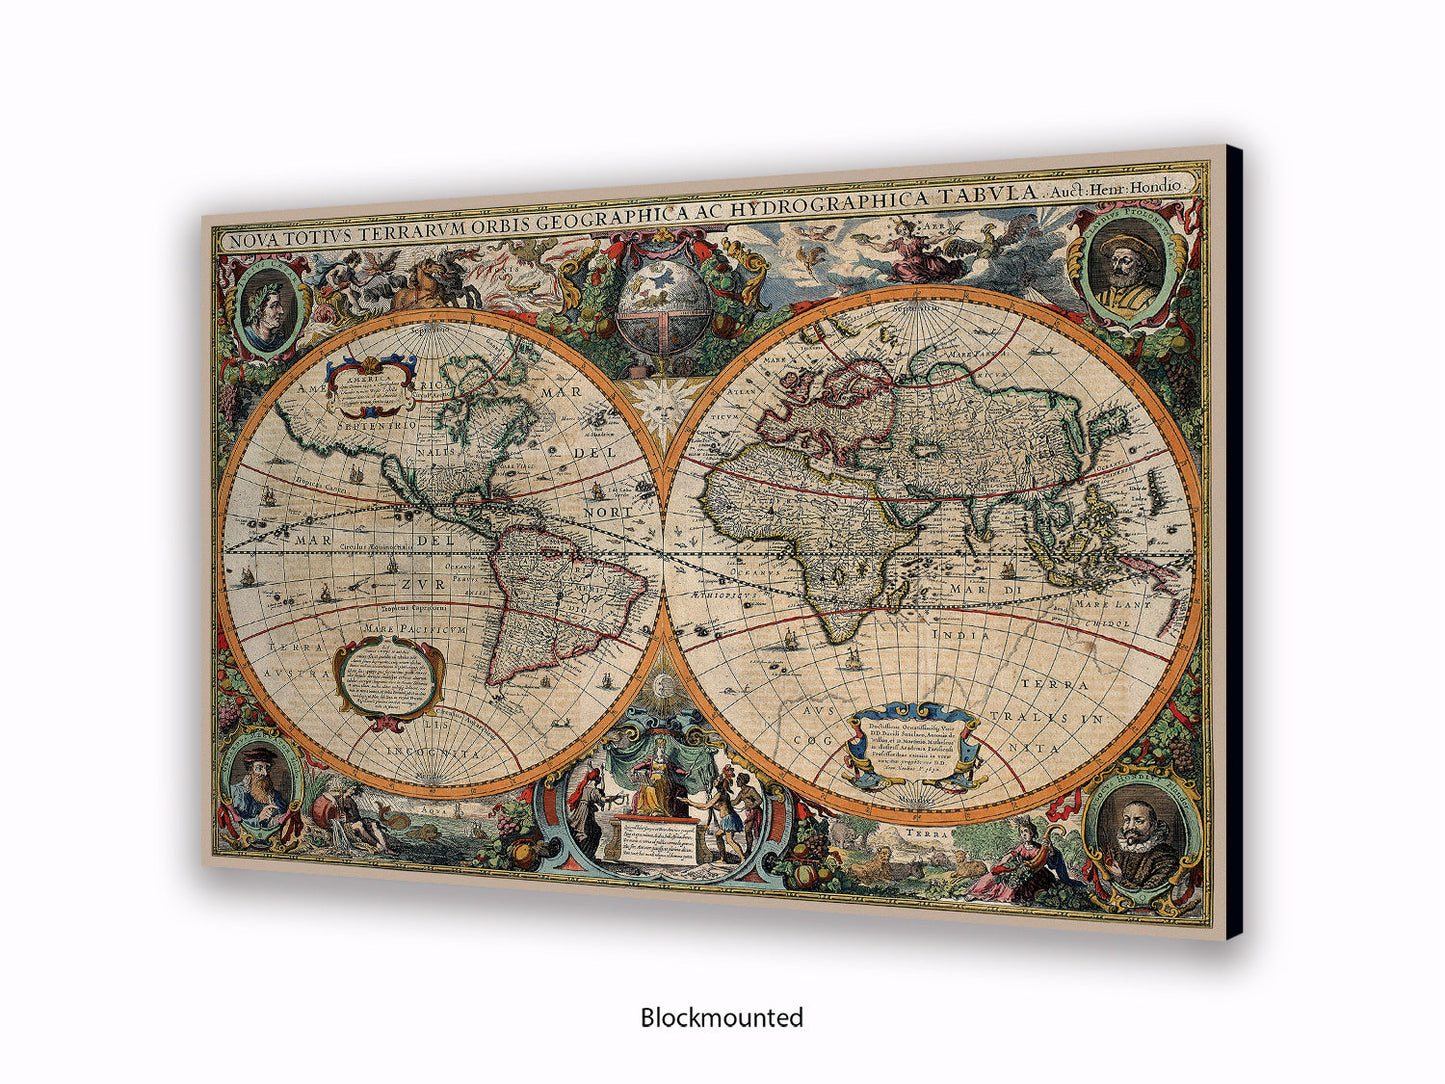 Antique World Map Nova Totivs Orbis Geographica Vintage Poster